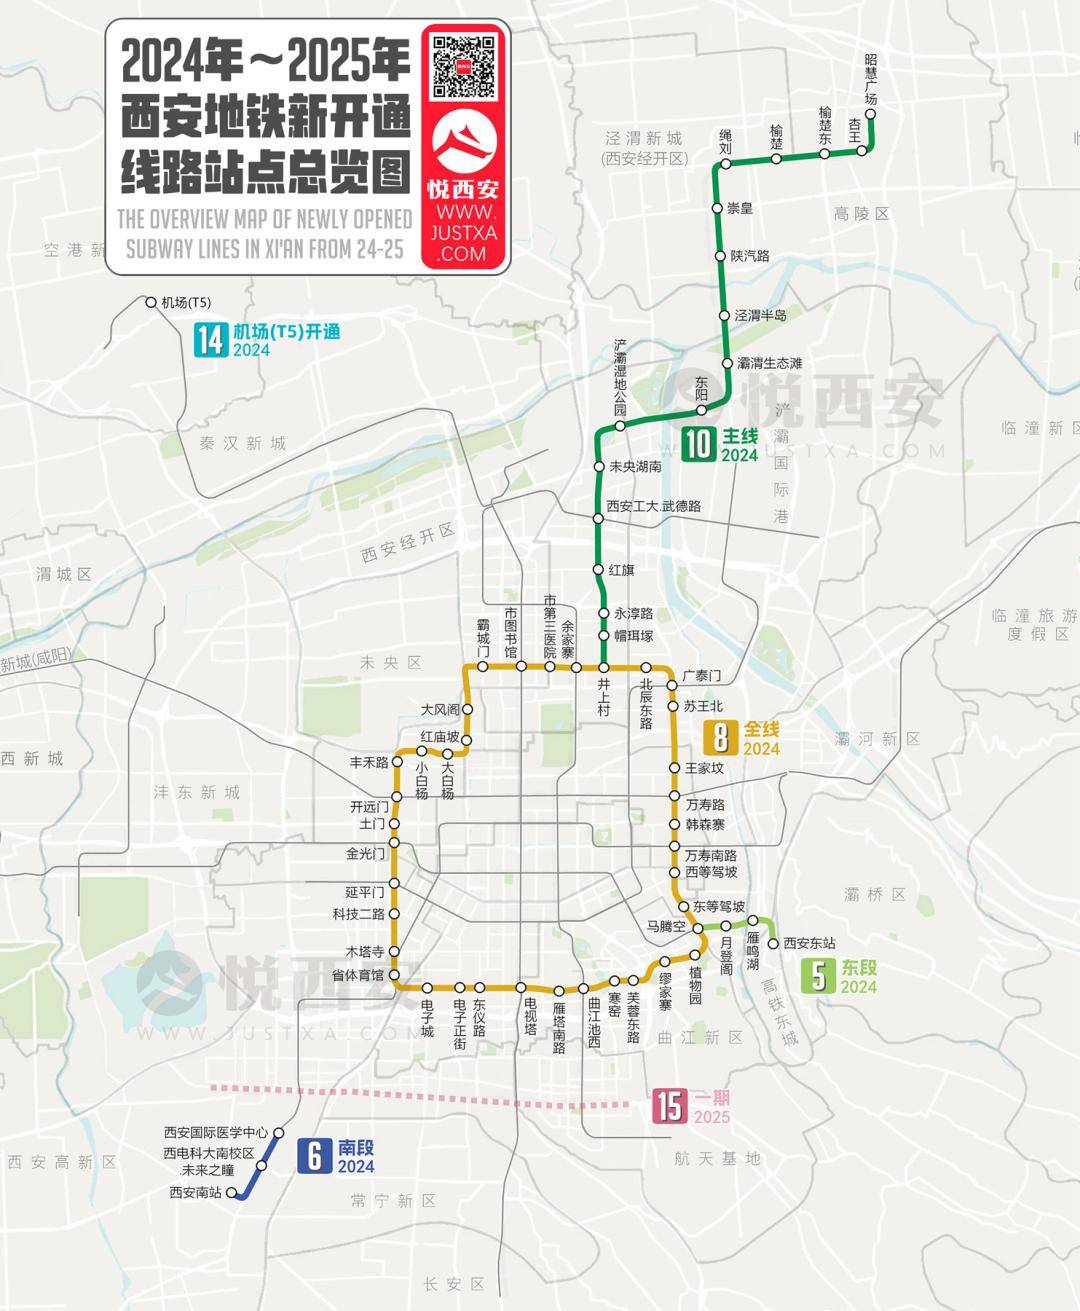 西安地铁2024年开通线路计划(站名非最终)08悦西安由此看来,此次